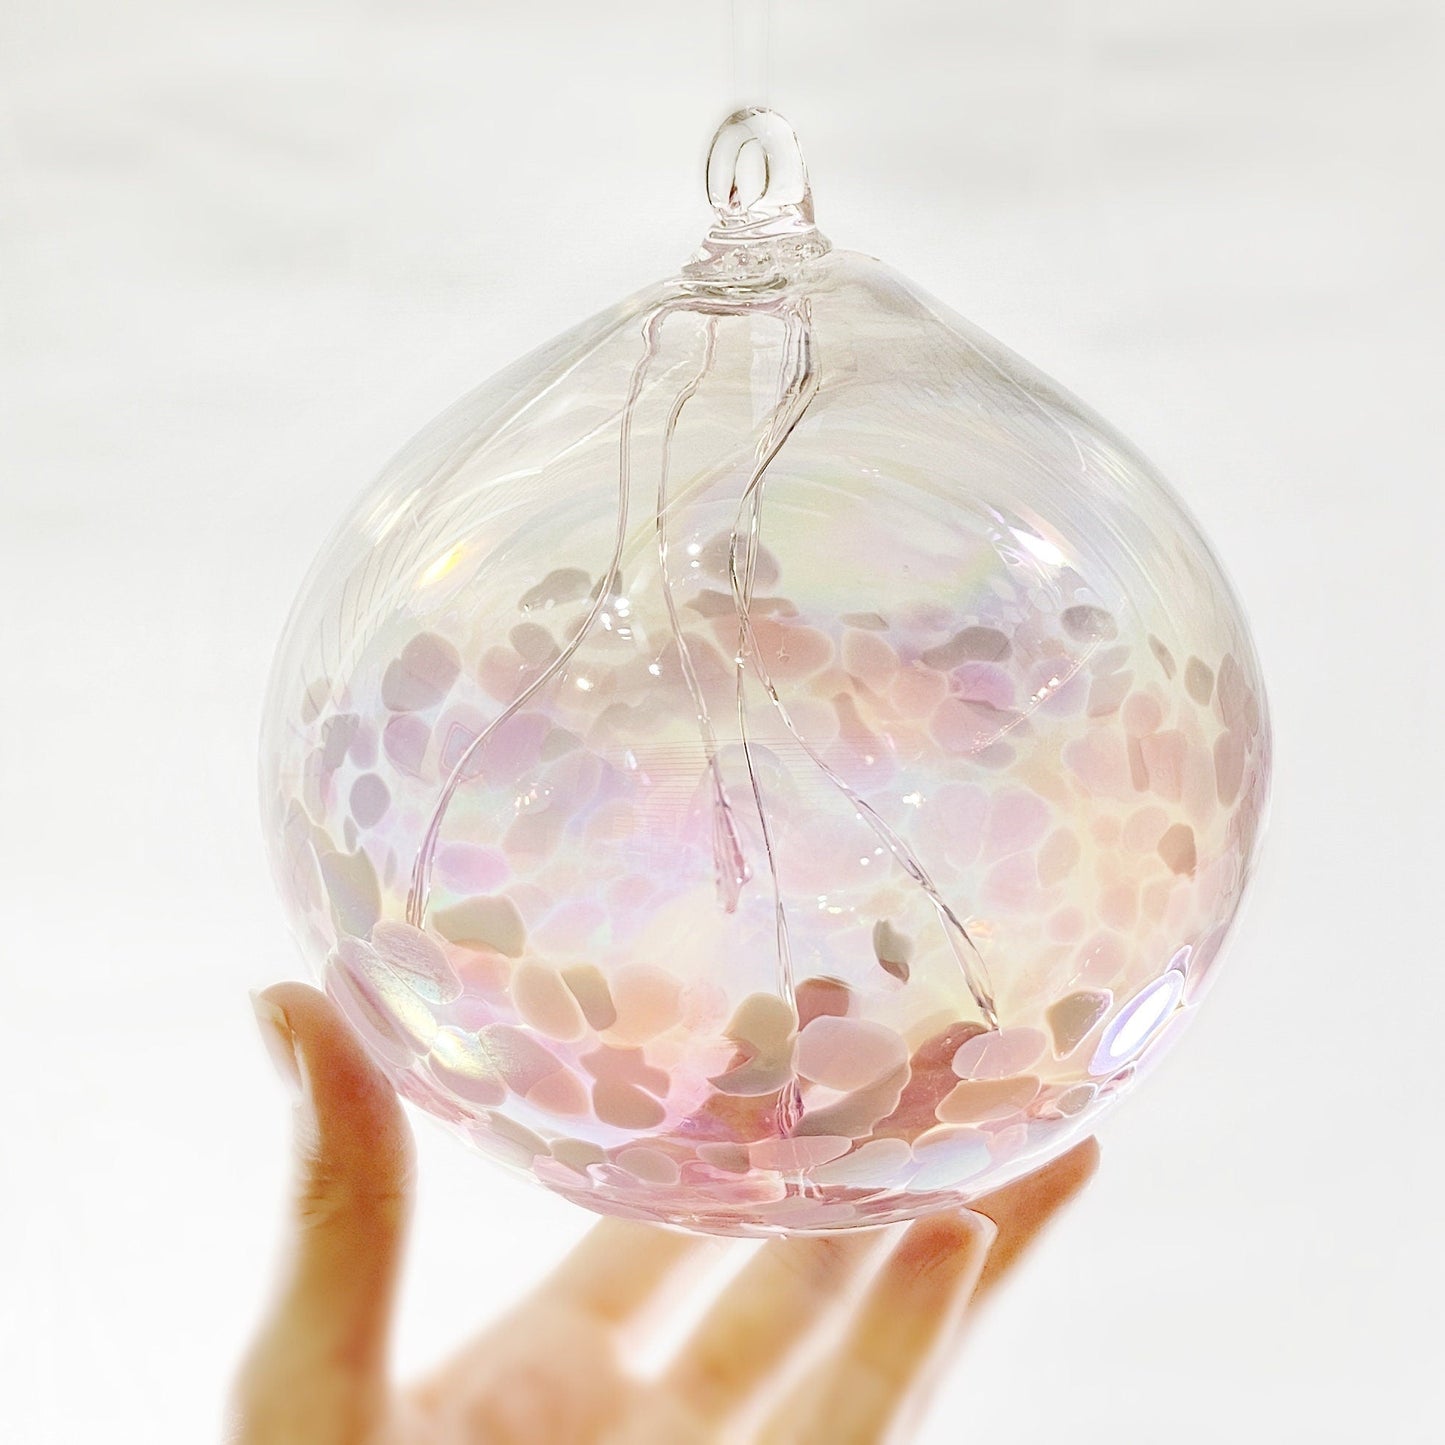 Handmade Glass Witches Ball - Iridescent Light Pink